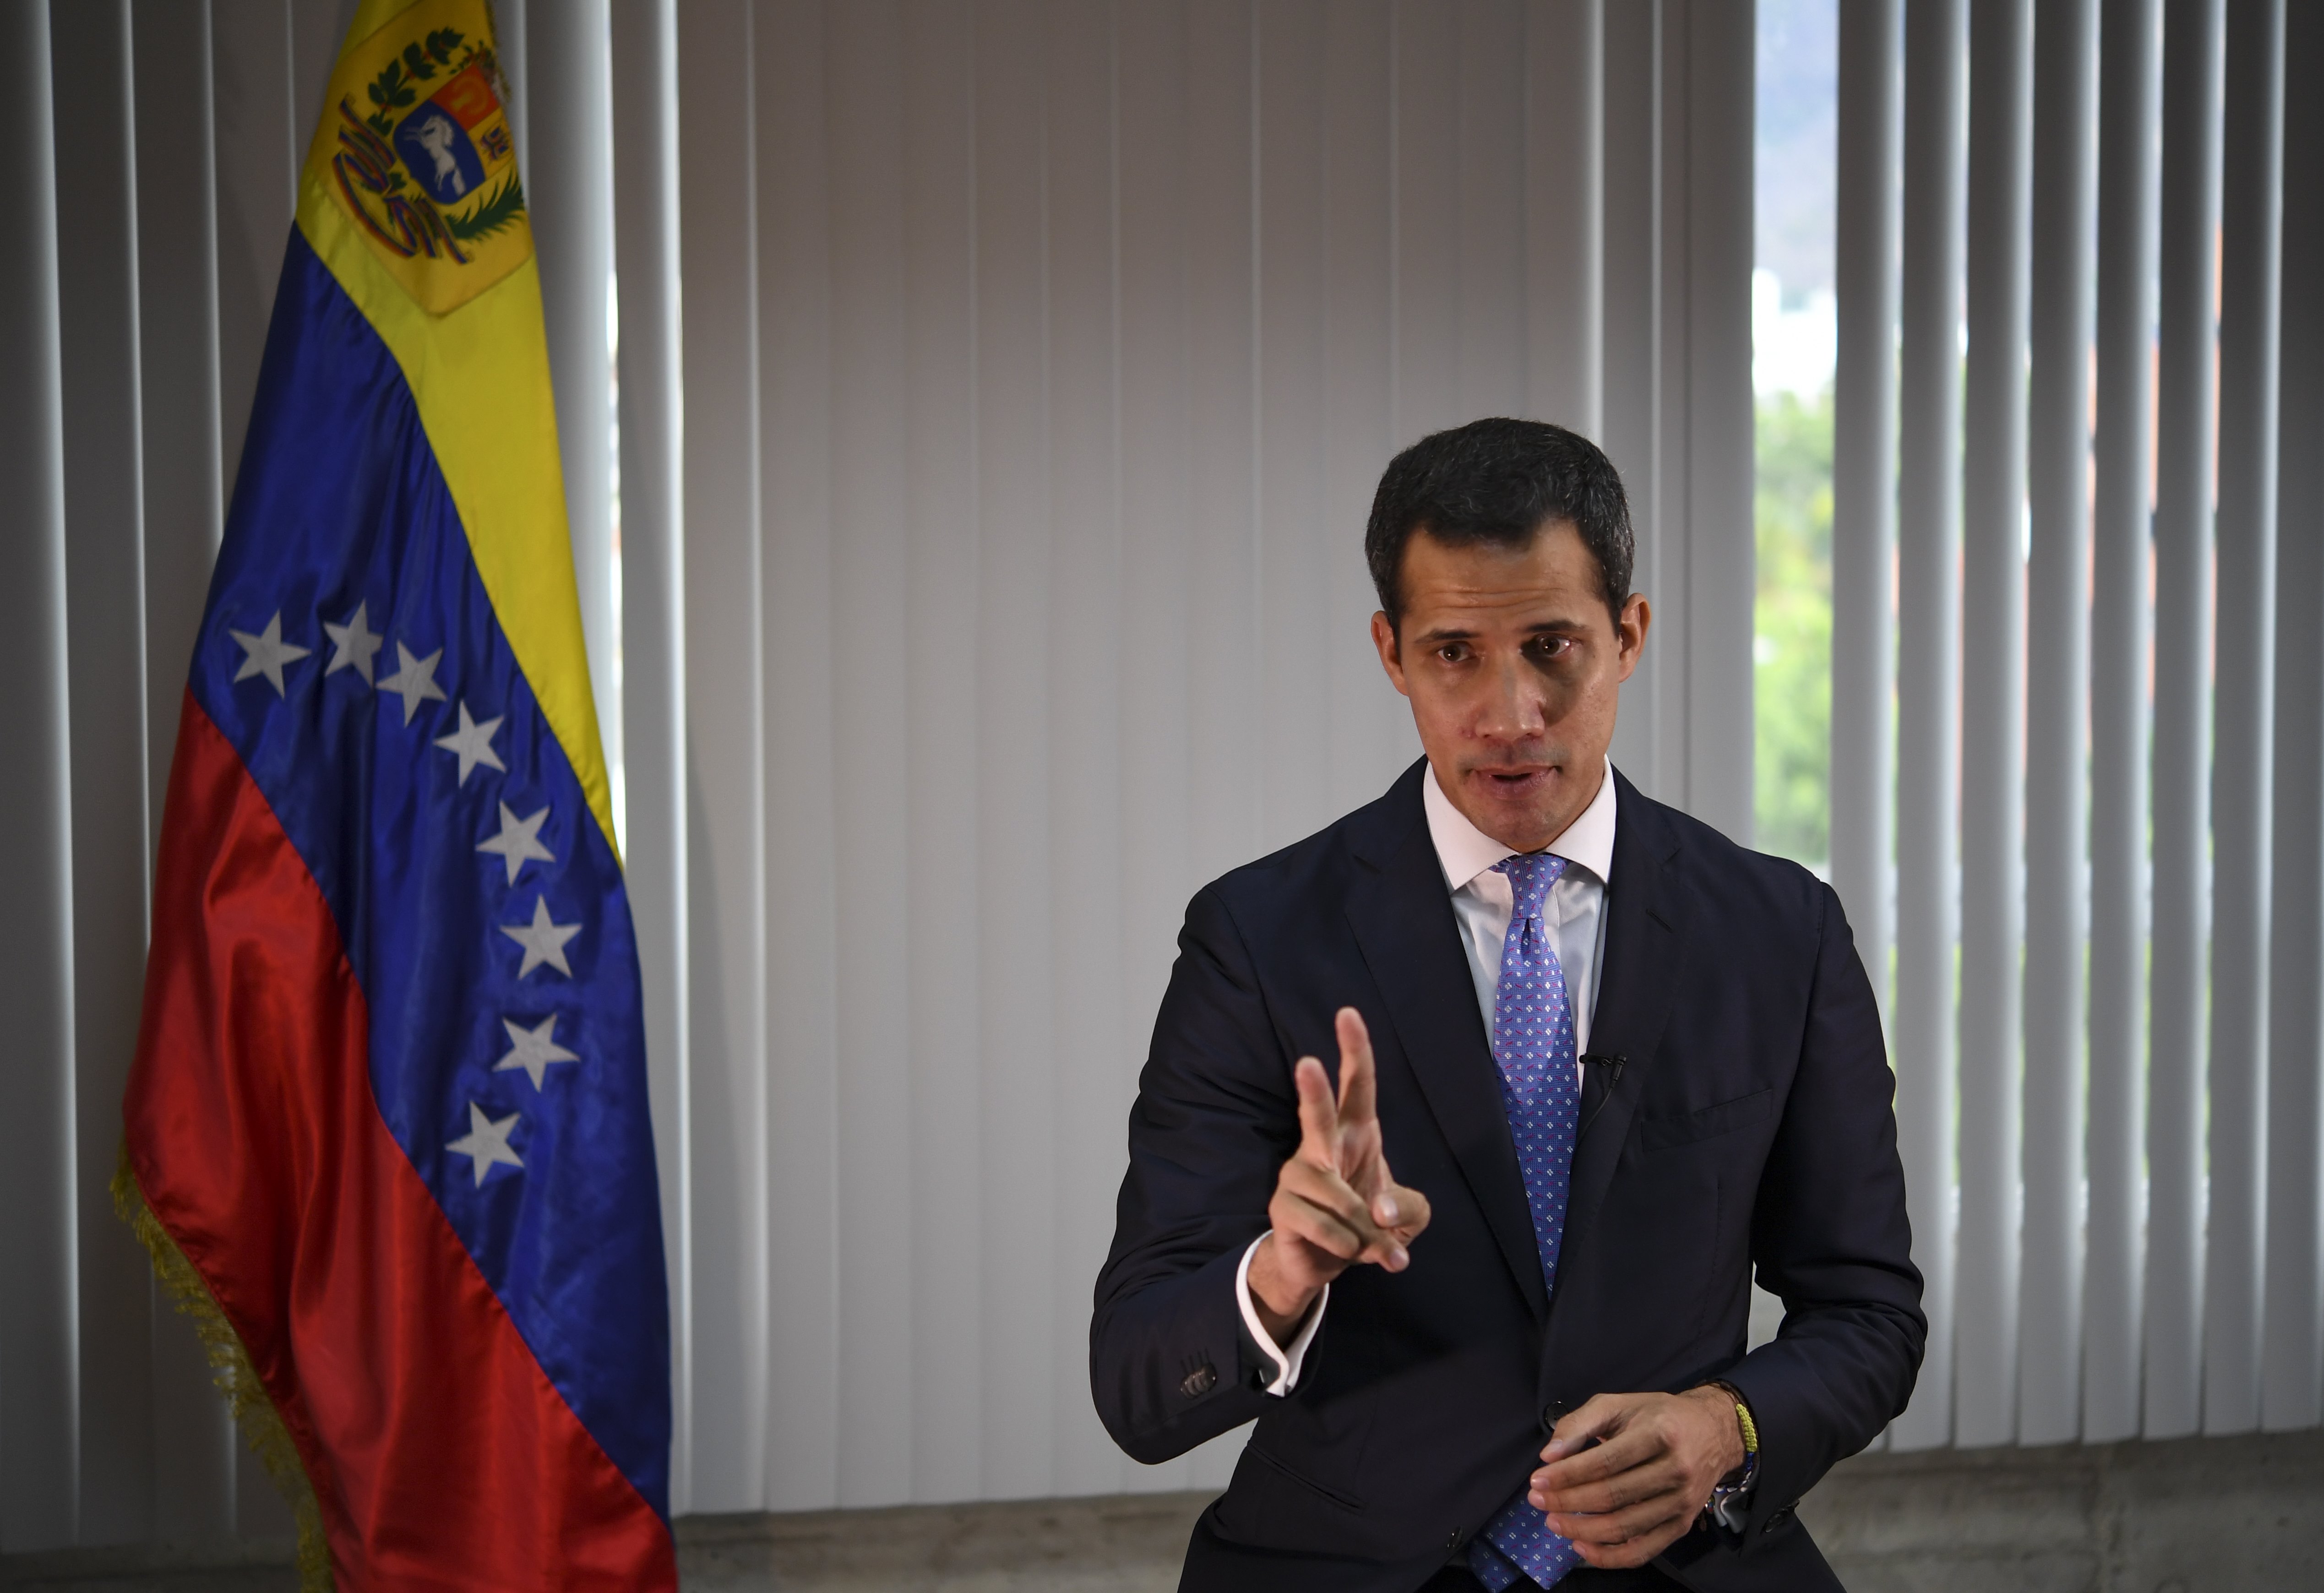 Guaidó: Többen is megígérték, hogy követnek Maduro ellen, de nem tartották be a szavukat